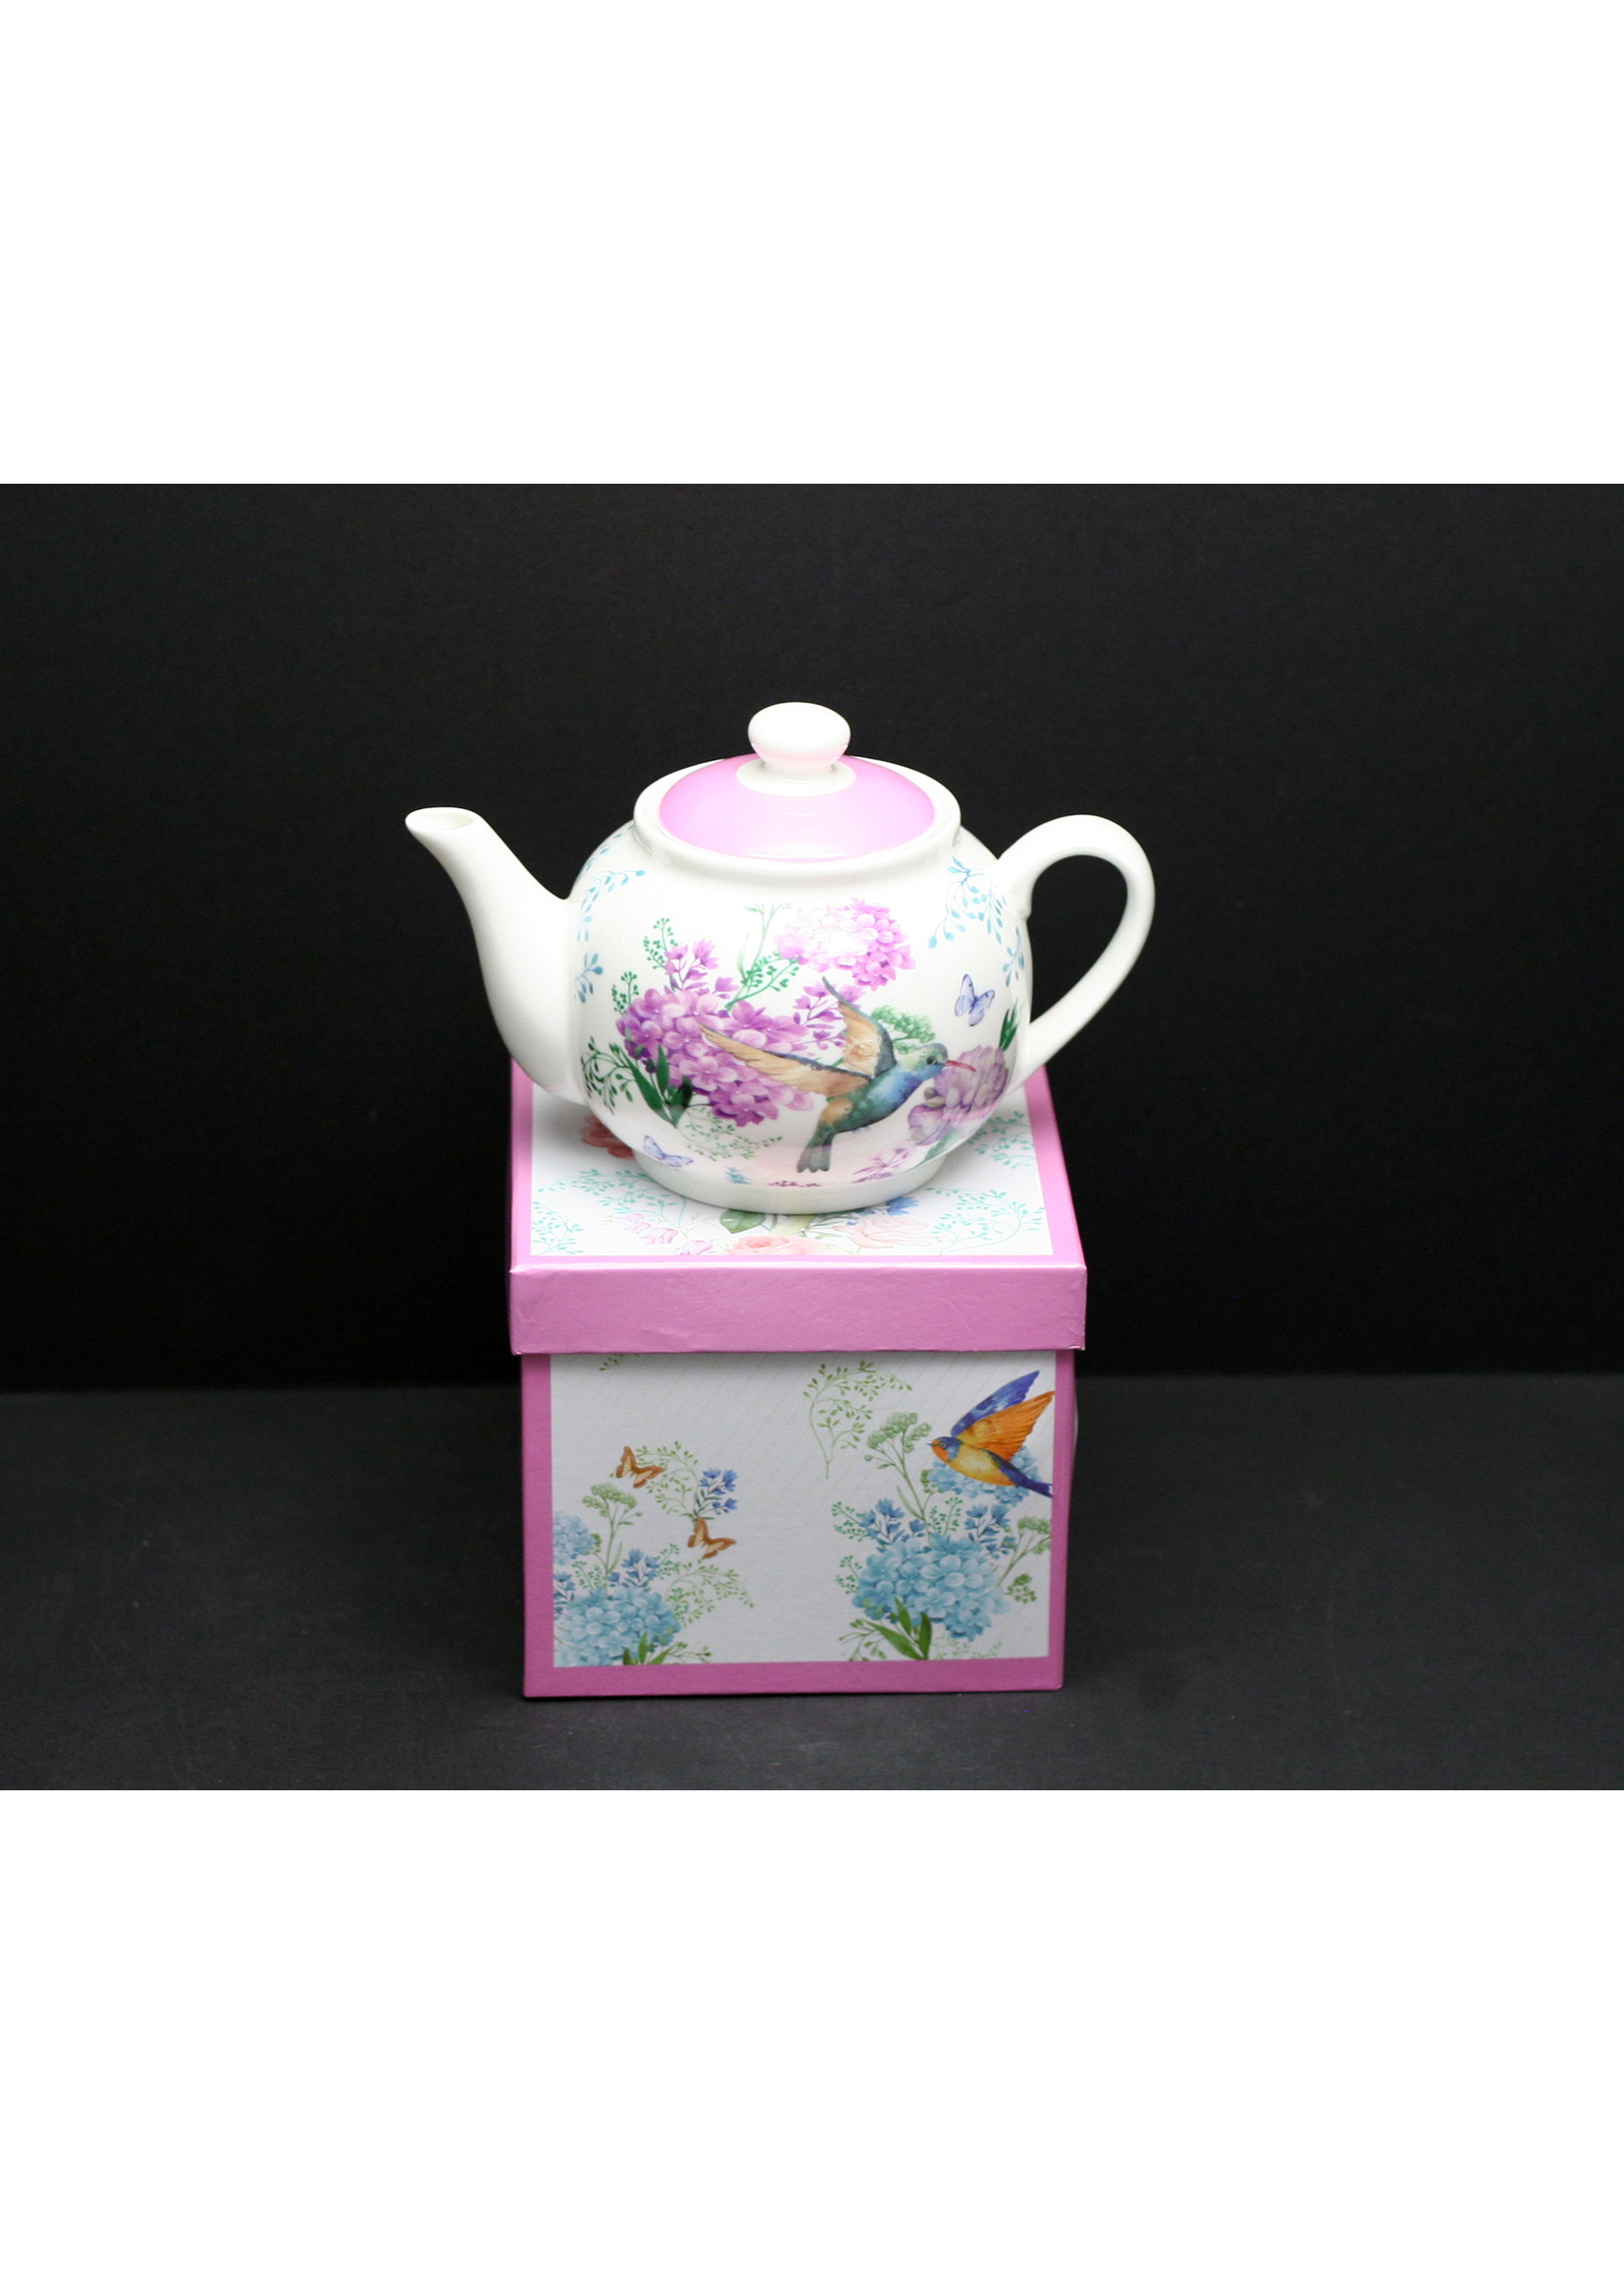 ACE 900ml Porcelain Teapot, Humming Bird